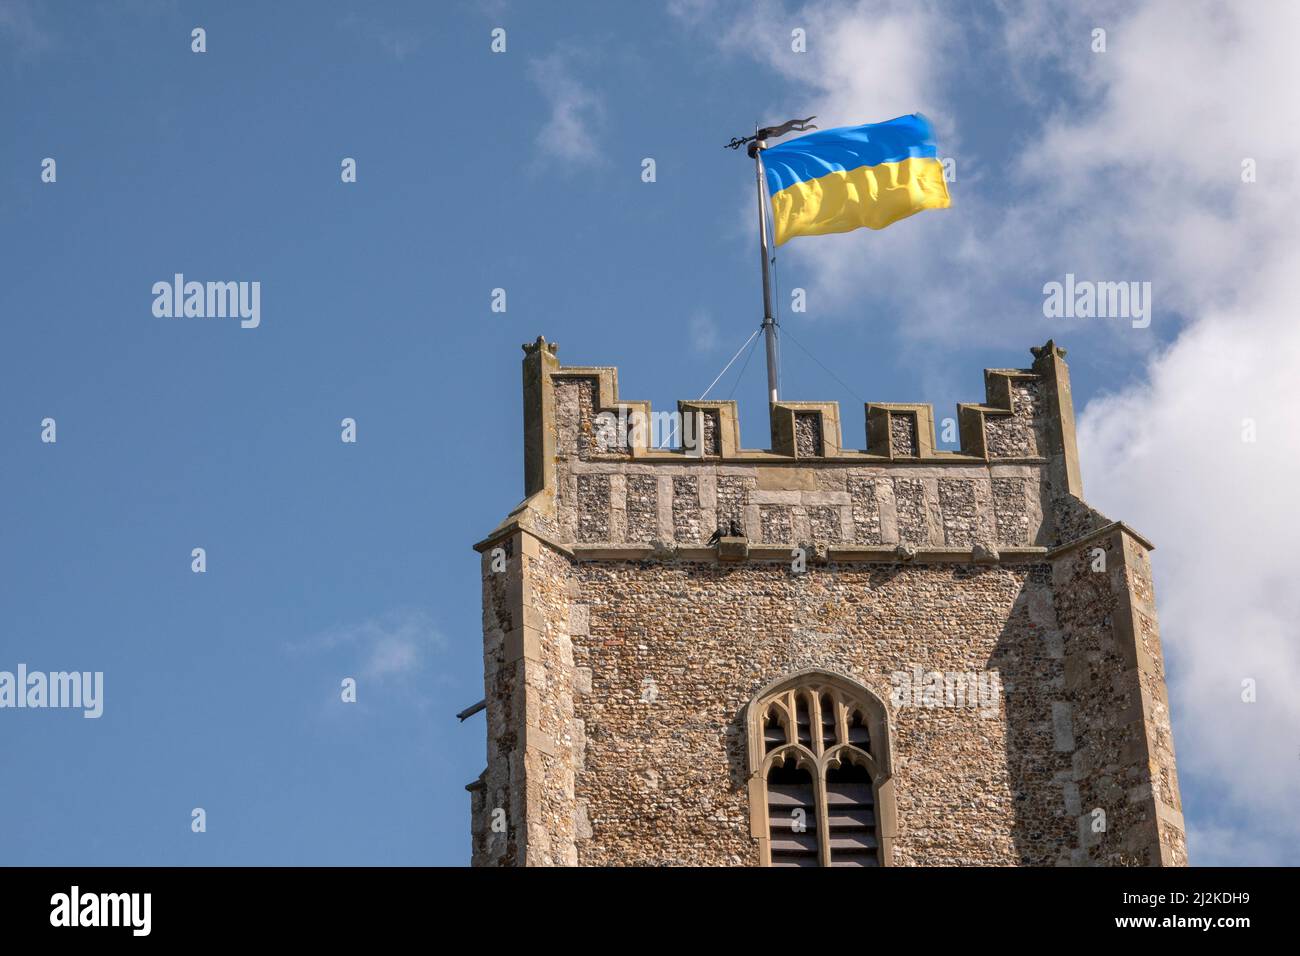 La République populaire d'Ukraine drapeau bicolore volant de la tour de l'église Saint-Pierre et Saint-Paul, Aldeburgh, Suffolk. En plein soleil. Banque D'Images